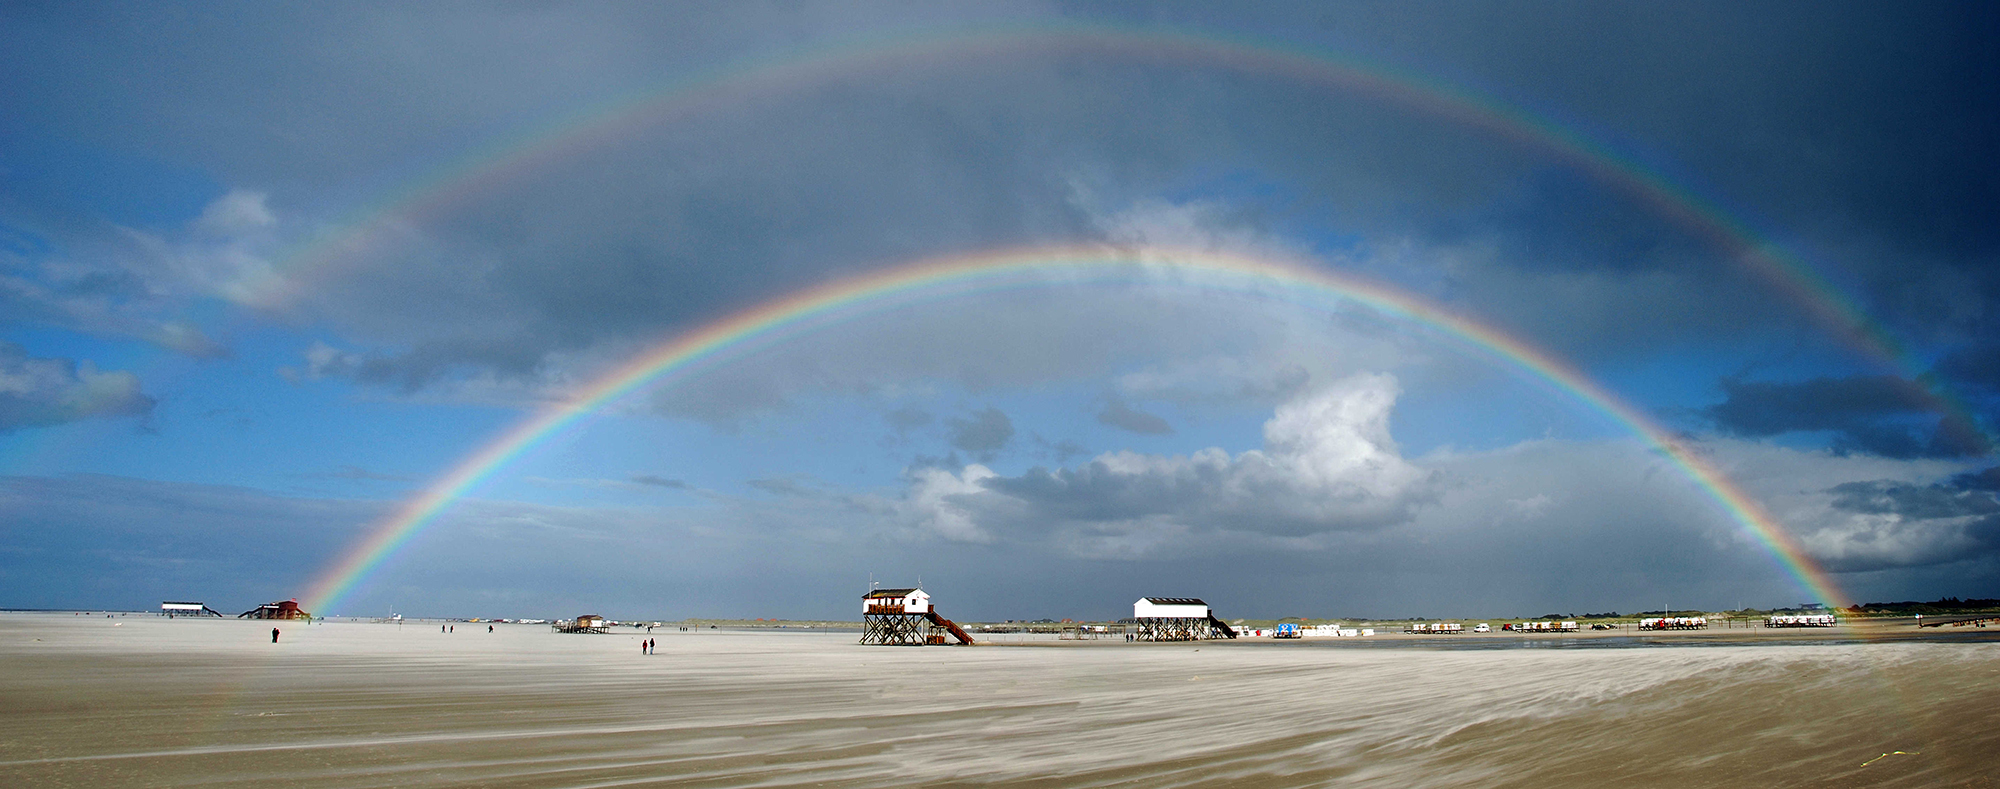 Strand mit Regenbogen kleiner